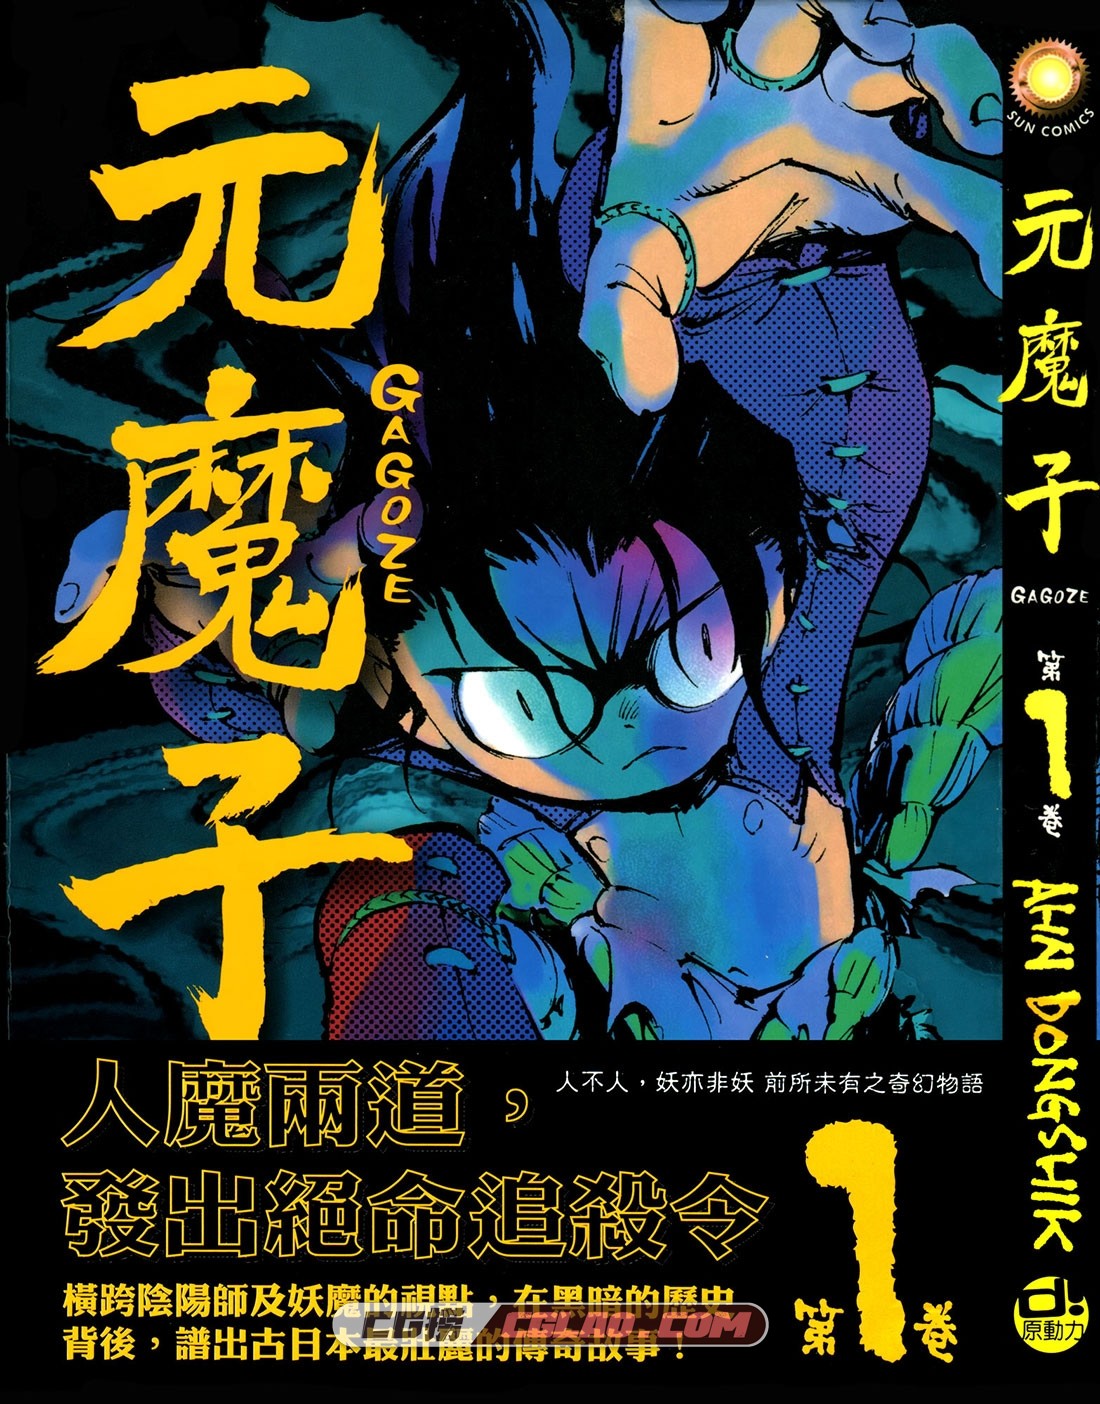 元魔子 AHN DONGSHIK 1-5卷全集完结 日本少年漫画网盘下载,Gagoze_01-000.jpg